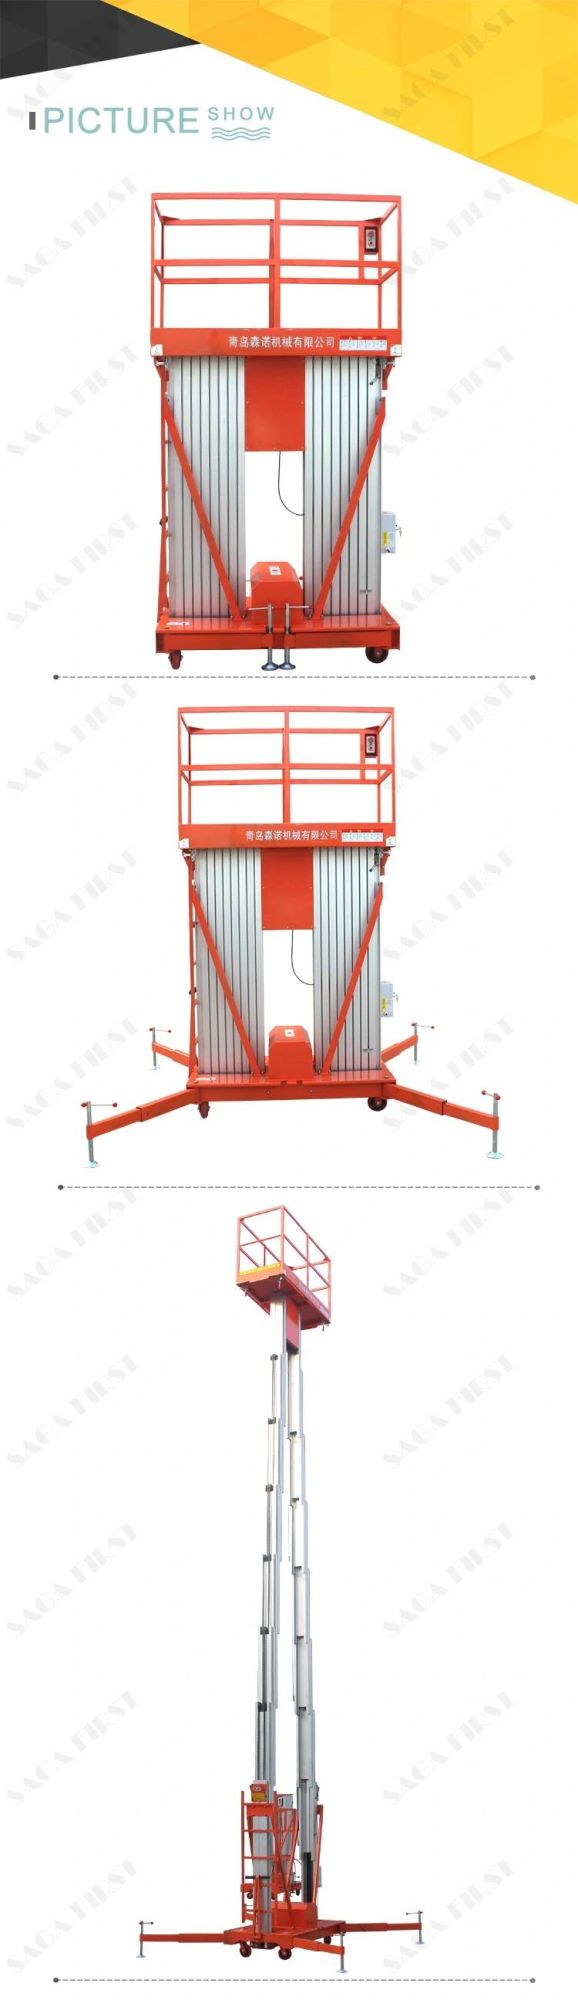 6m-16m Aluminum Electric Ladder Aloft Man Lifter